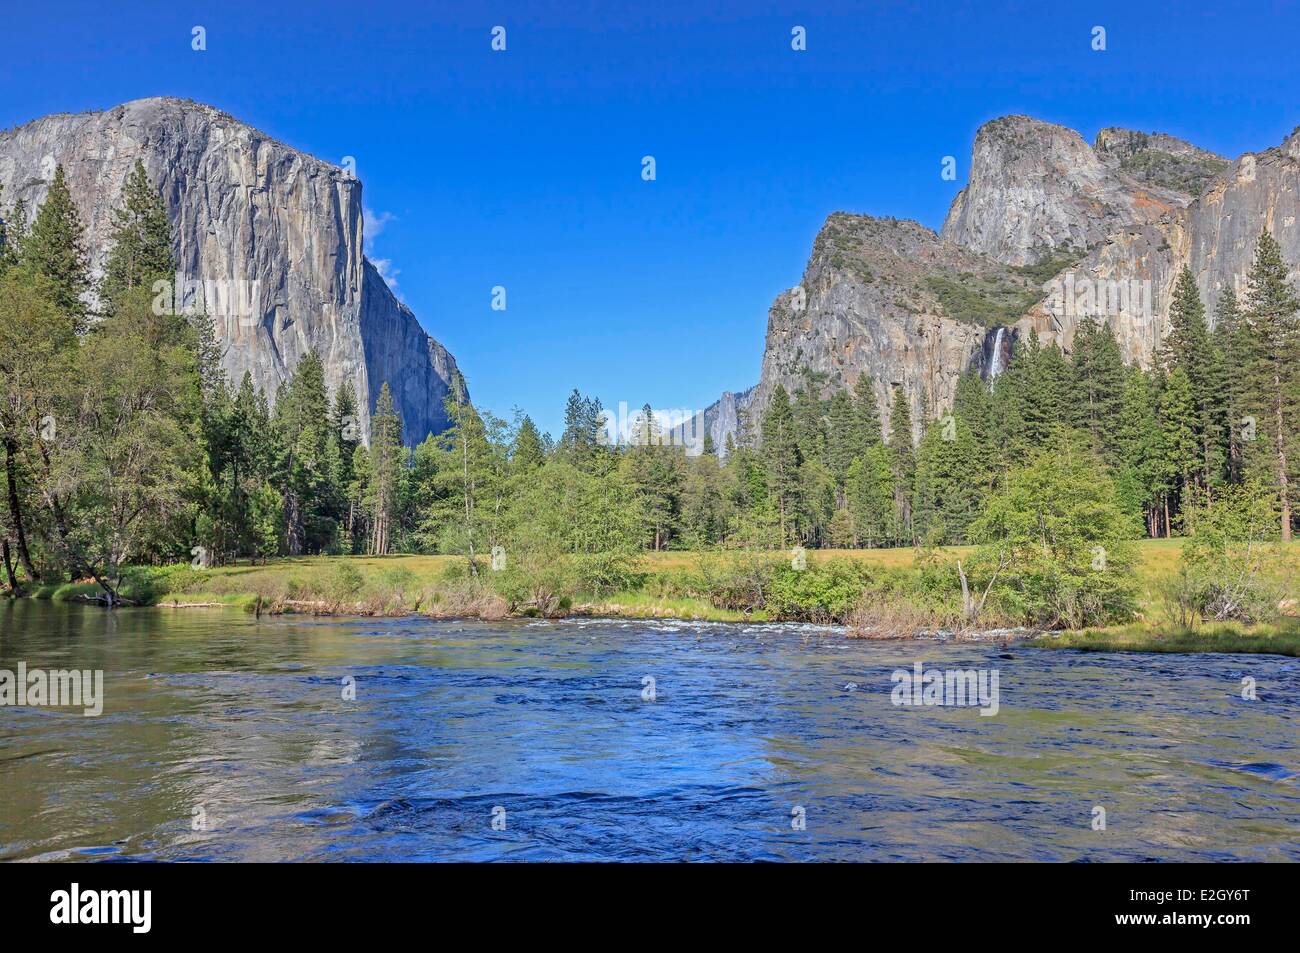 Stati Uniti California Sierra Nevada Parco Nazionale Yosemite elencati come patrimonio mondiale dall' UNESCO Yosemite Valley Merced River con El Capitan sulla sinistra e Bridalveil cadere sulla destra Foto Stock